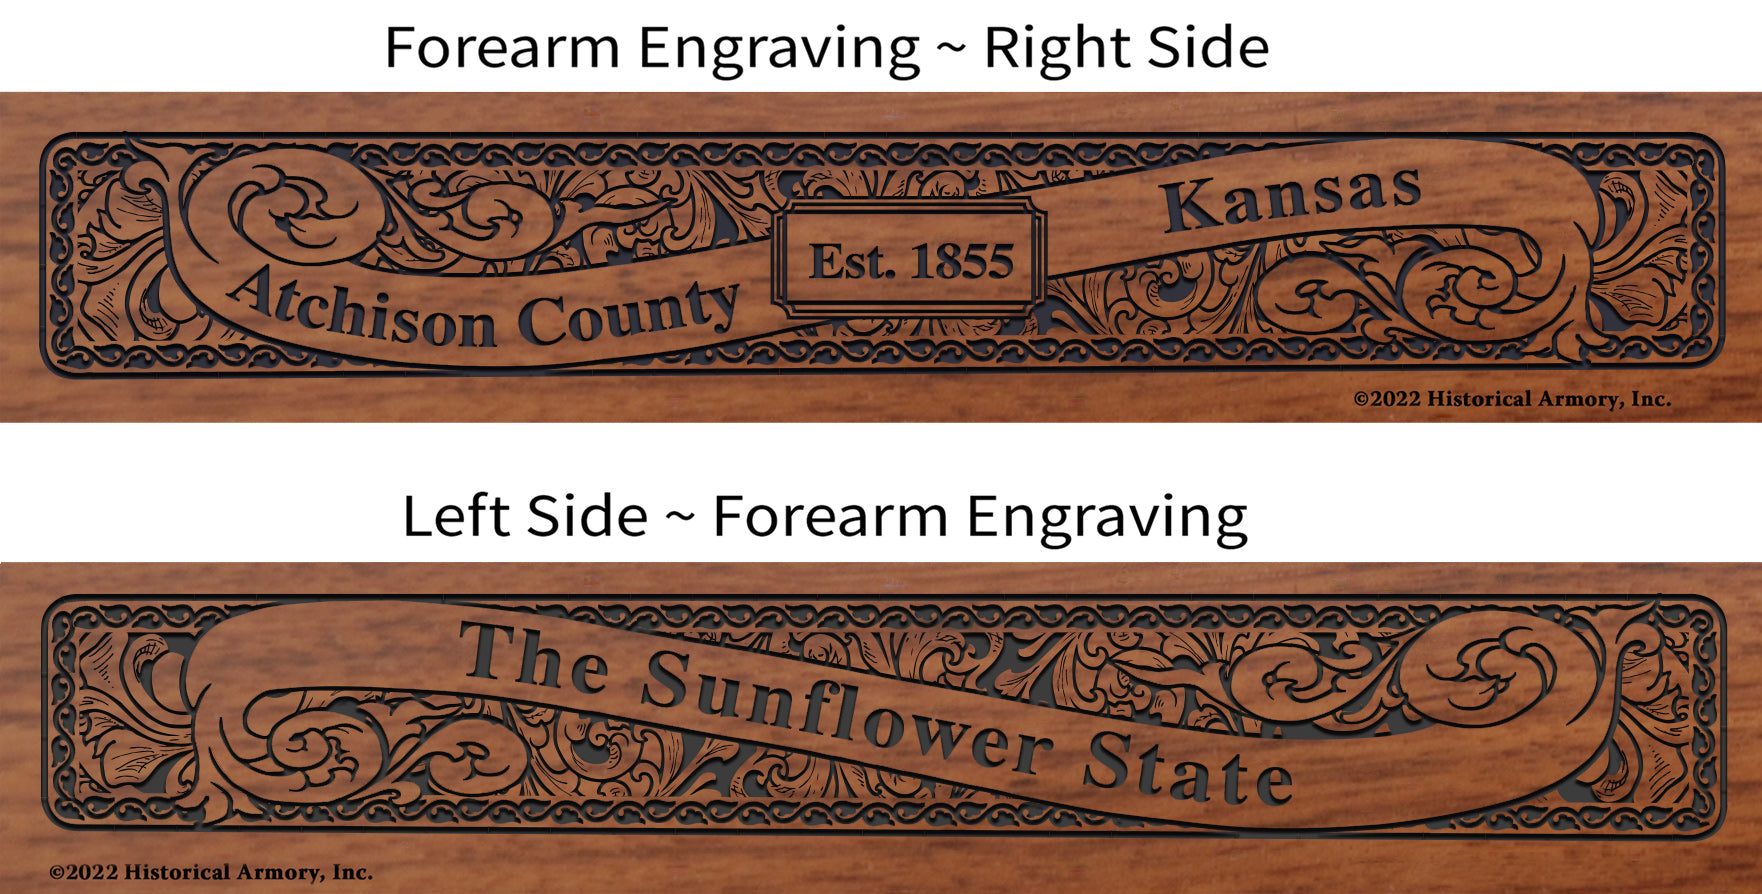 Atchison County Kansas Engraved Rifle Forearm